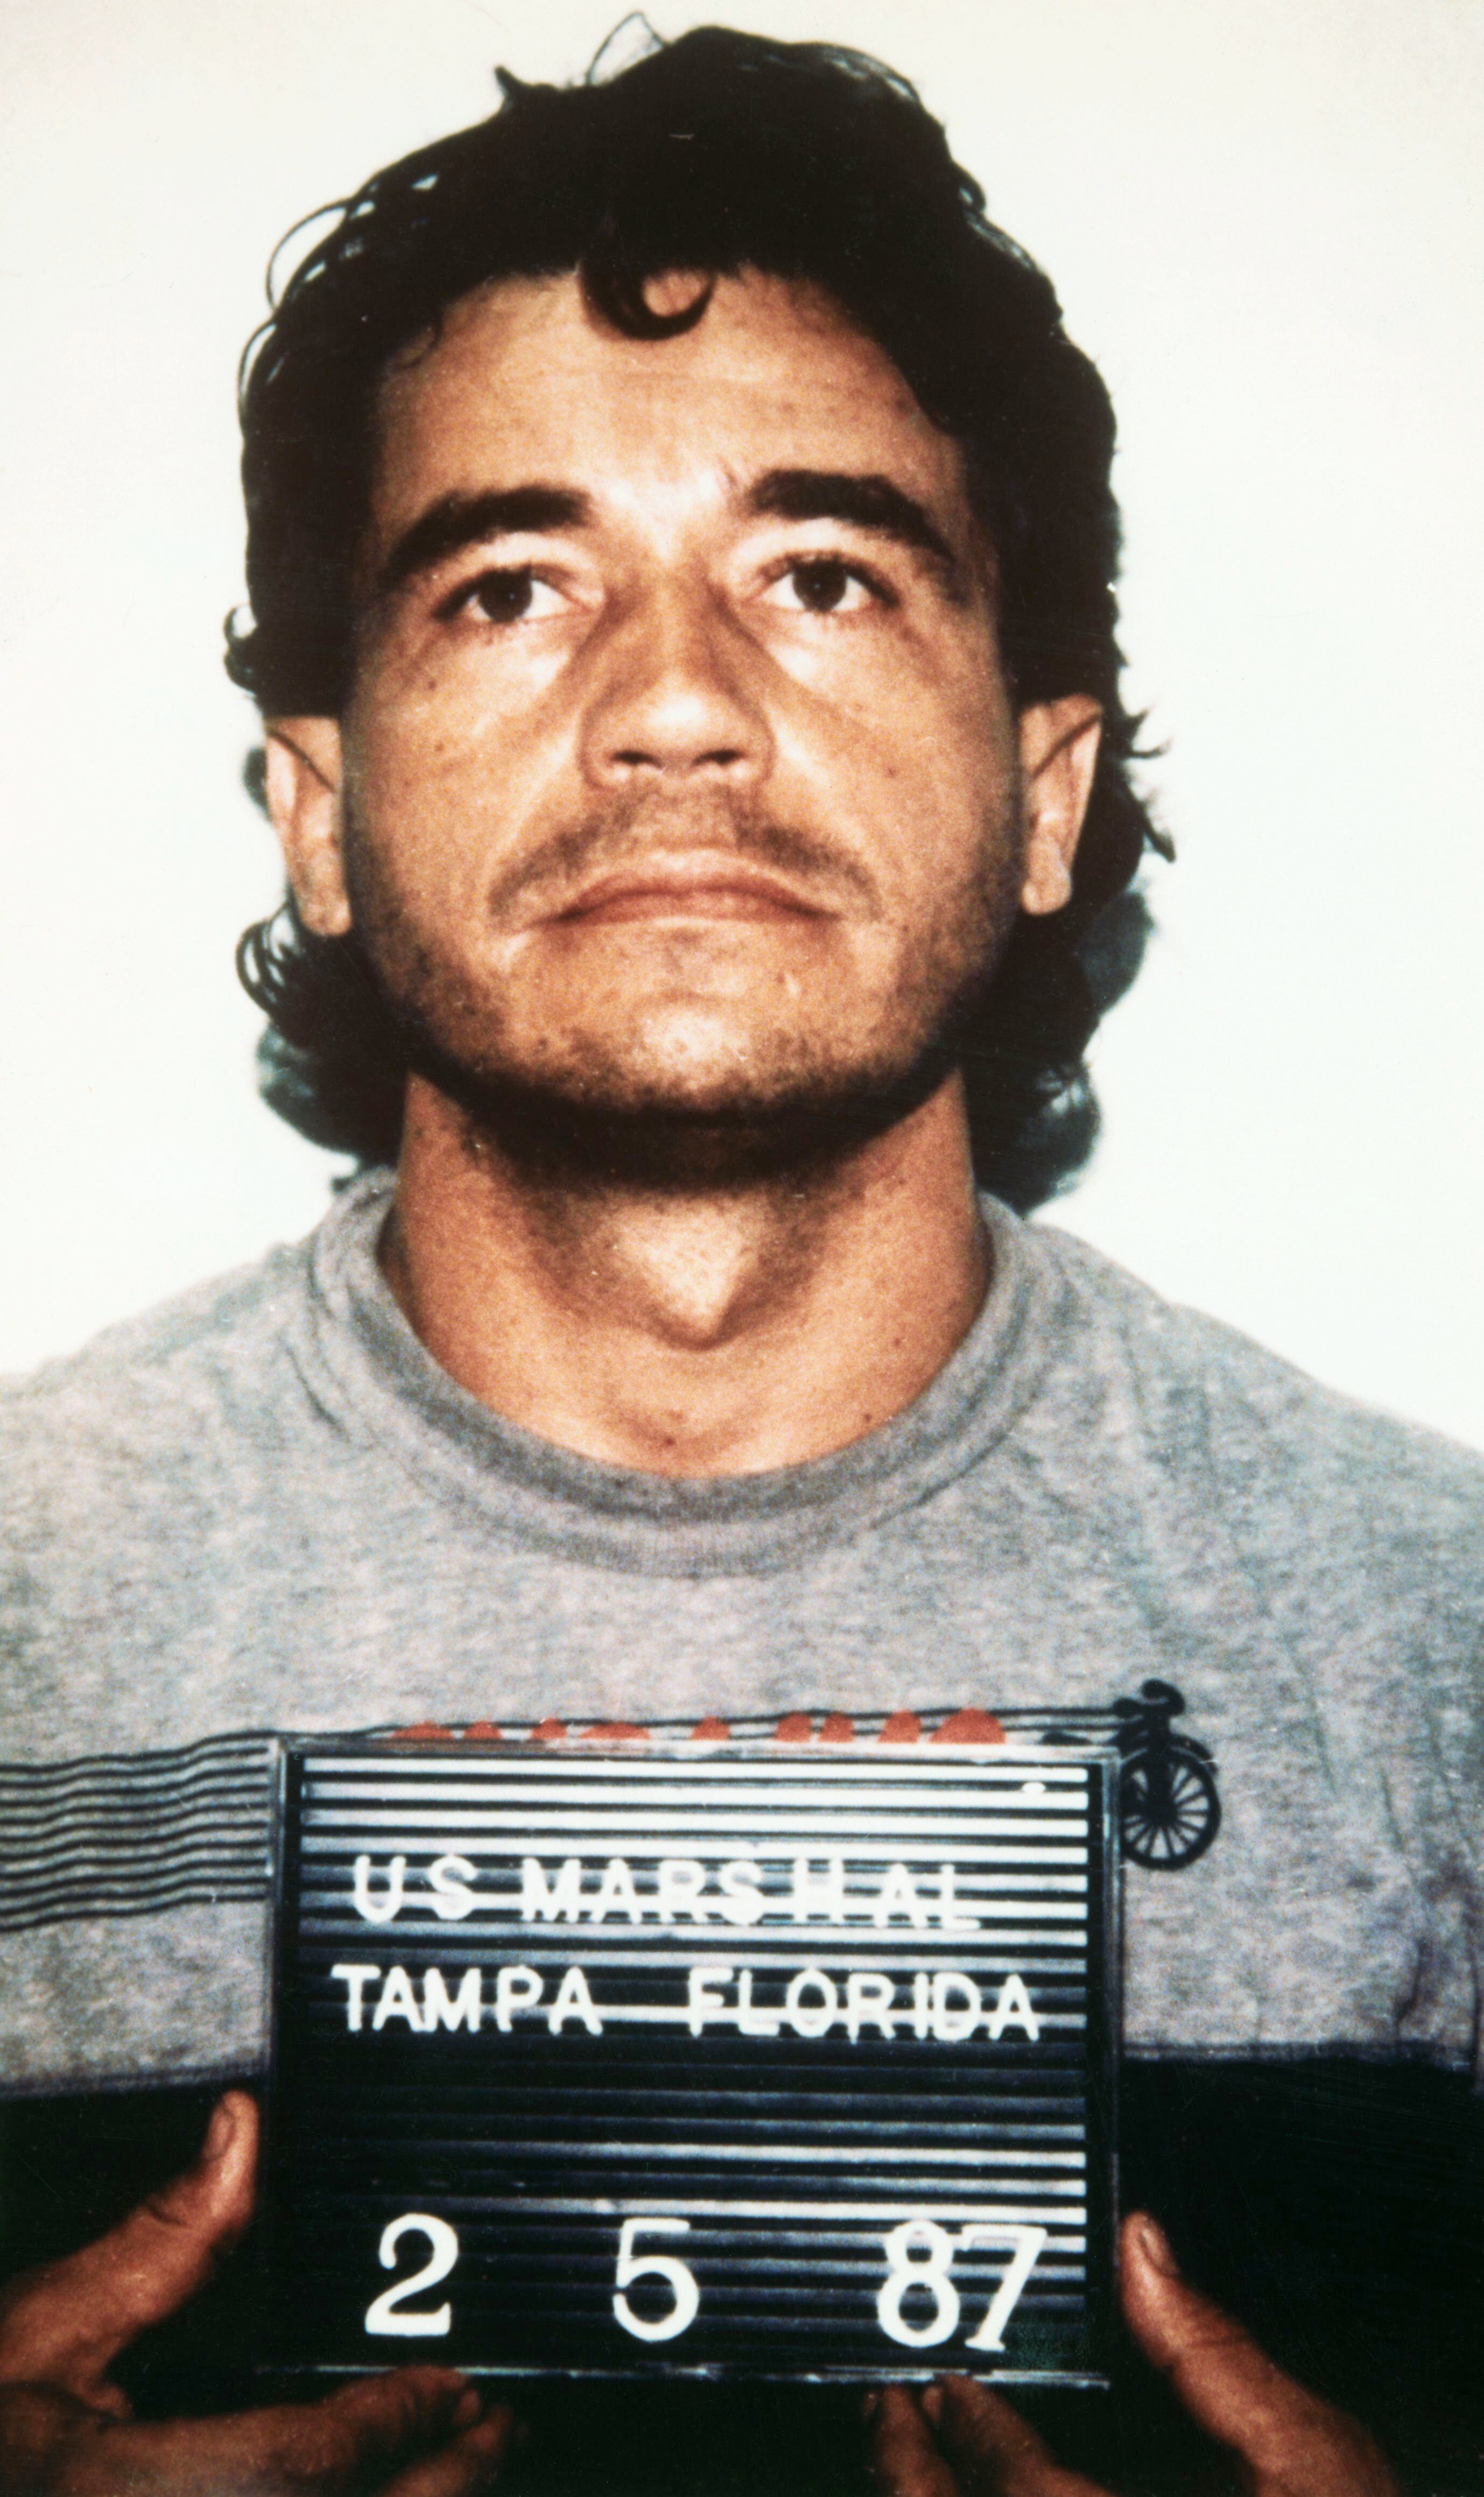 Carlos Enrique Lehder en la fotografía policial, durante su detención en Tampa, Florida. 